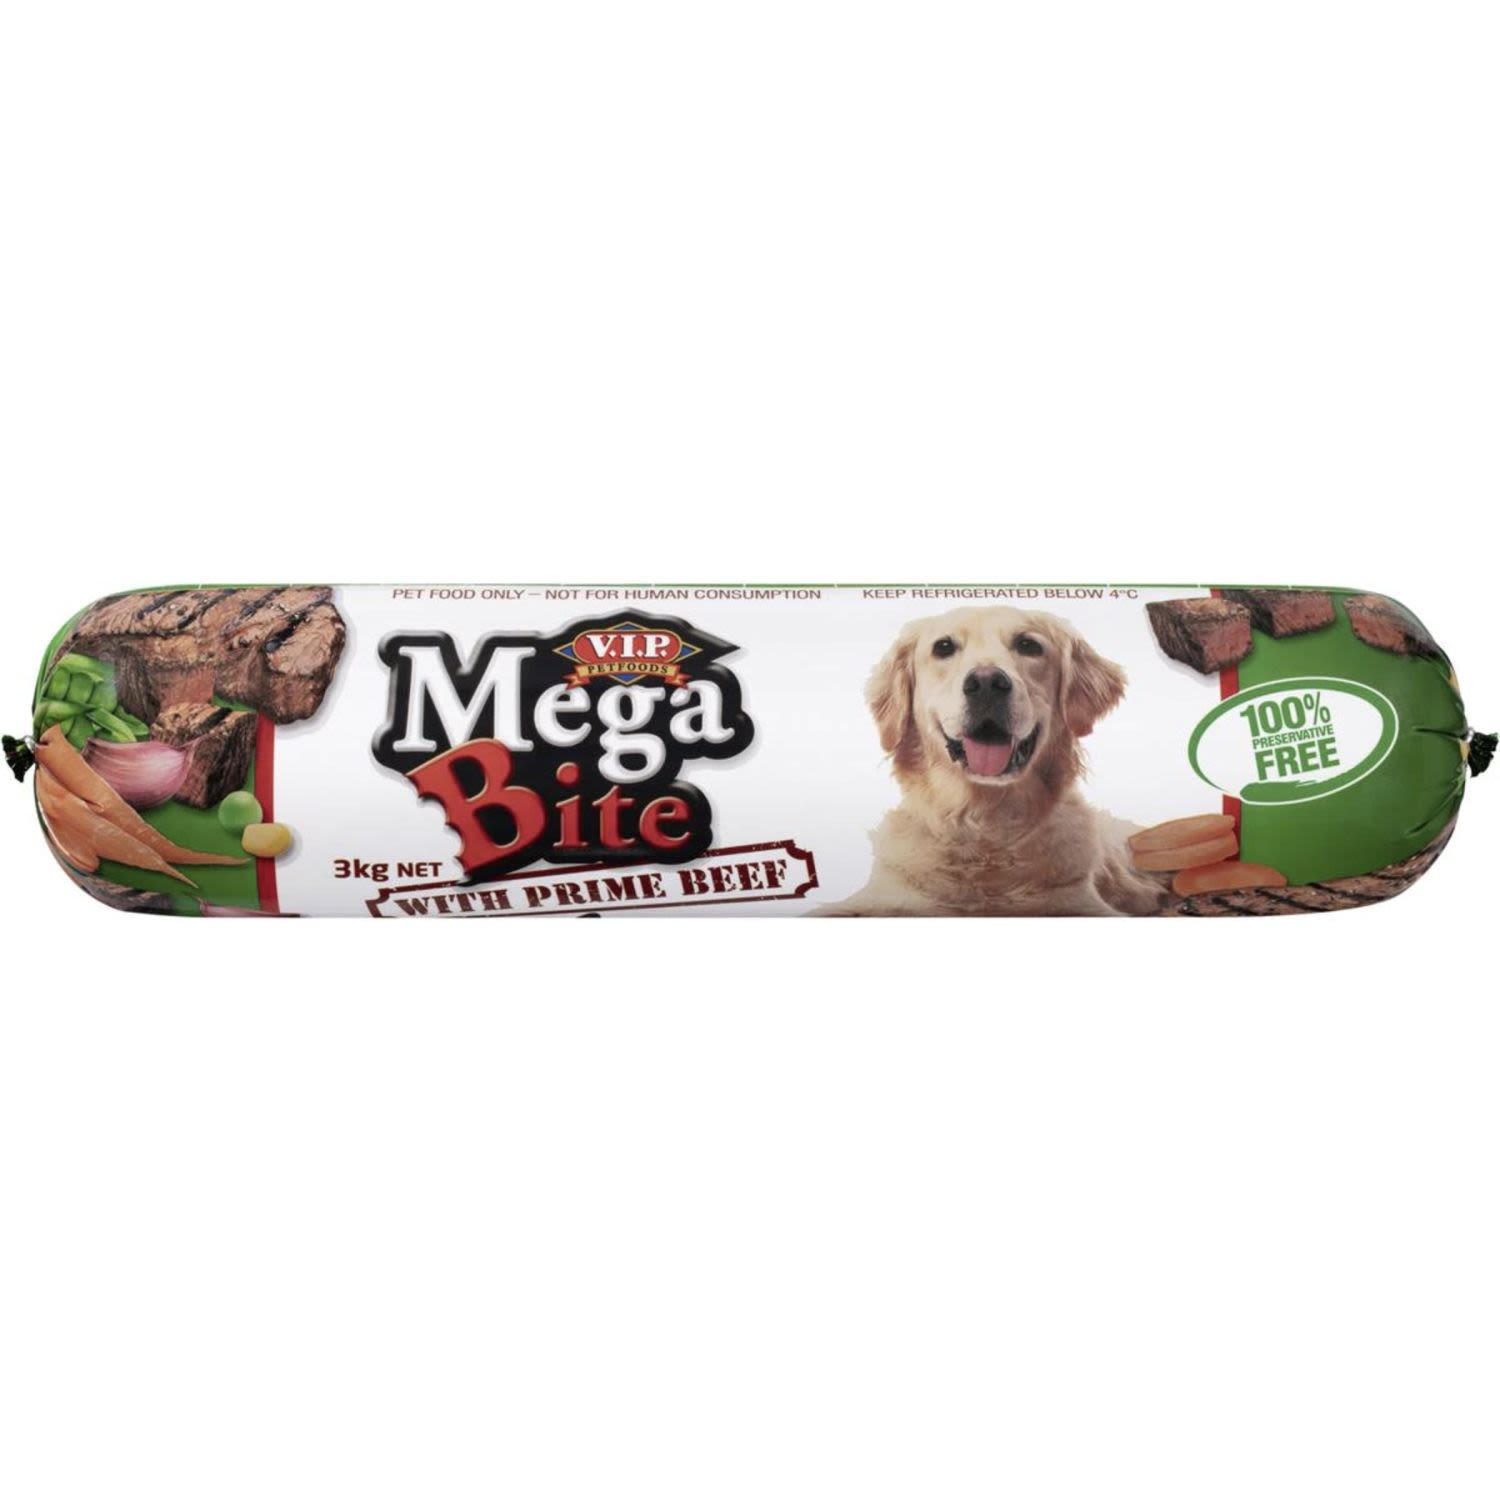 V.I.P. Adult Dog Food Mega Bite Roll, 3 Kilogram